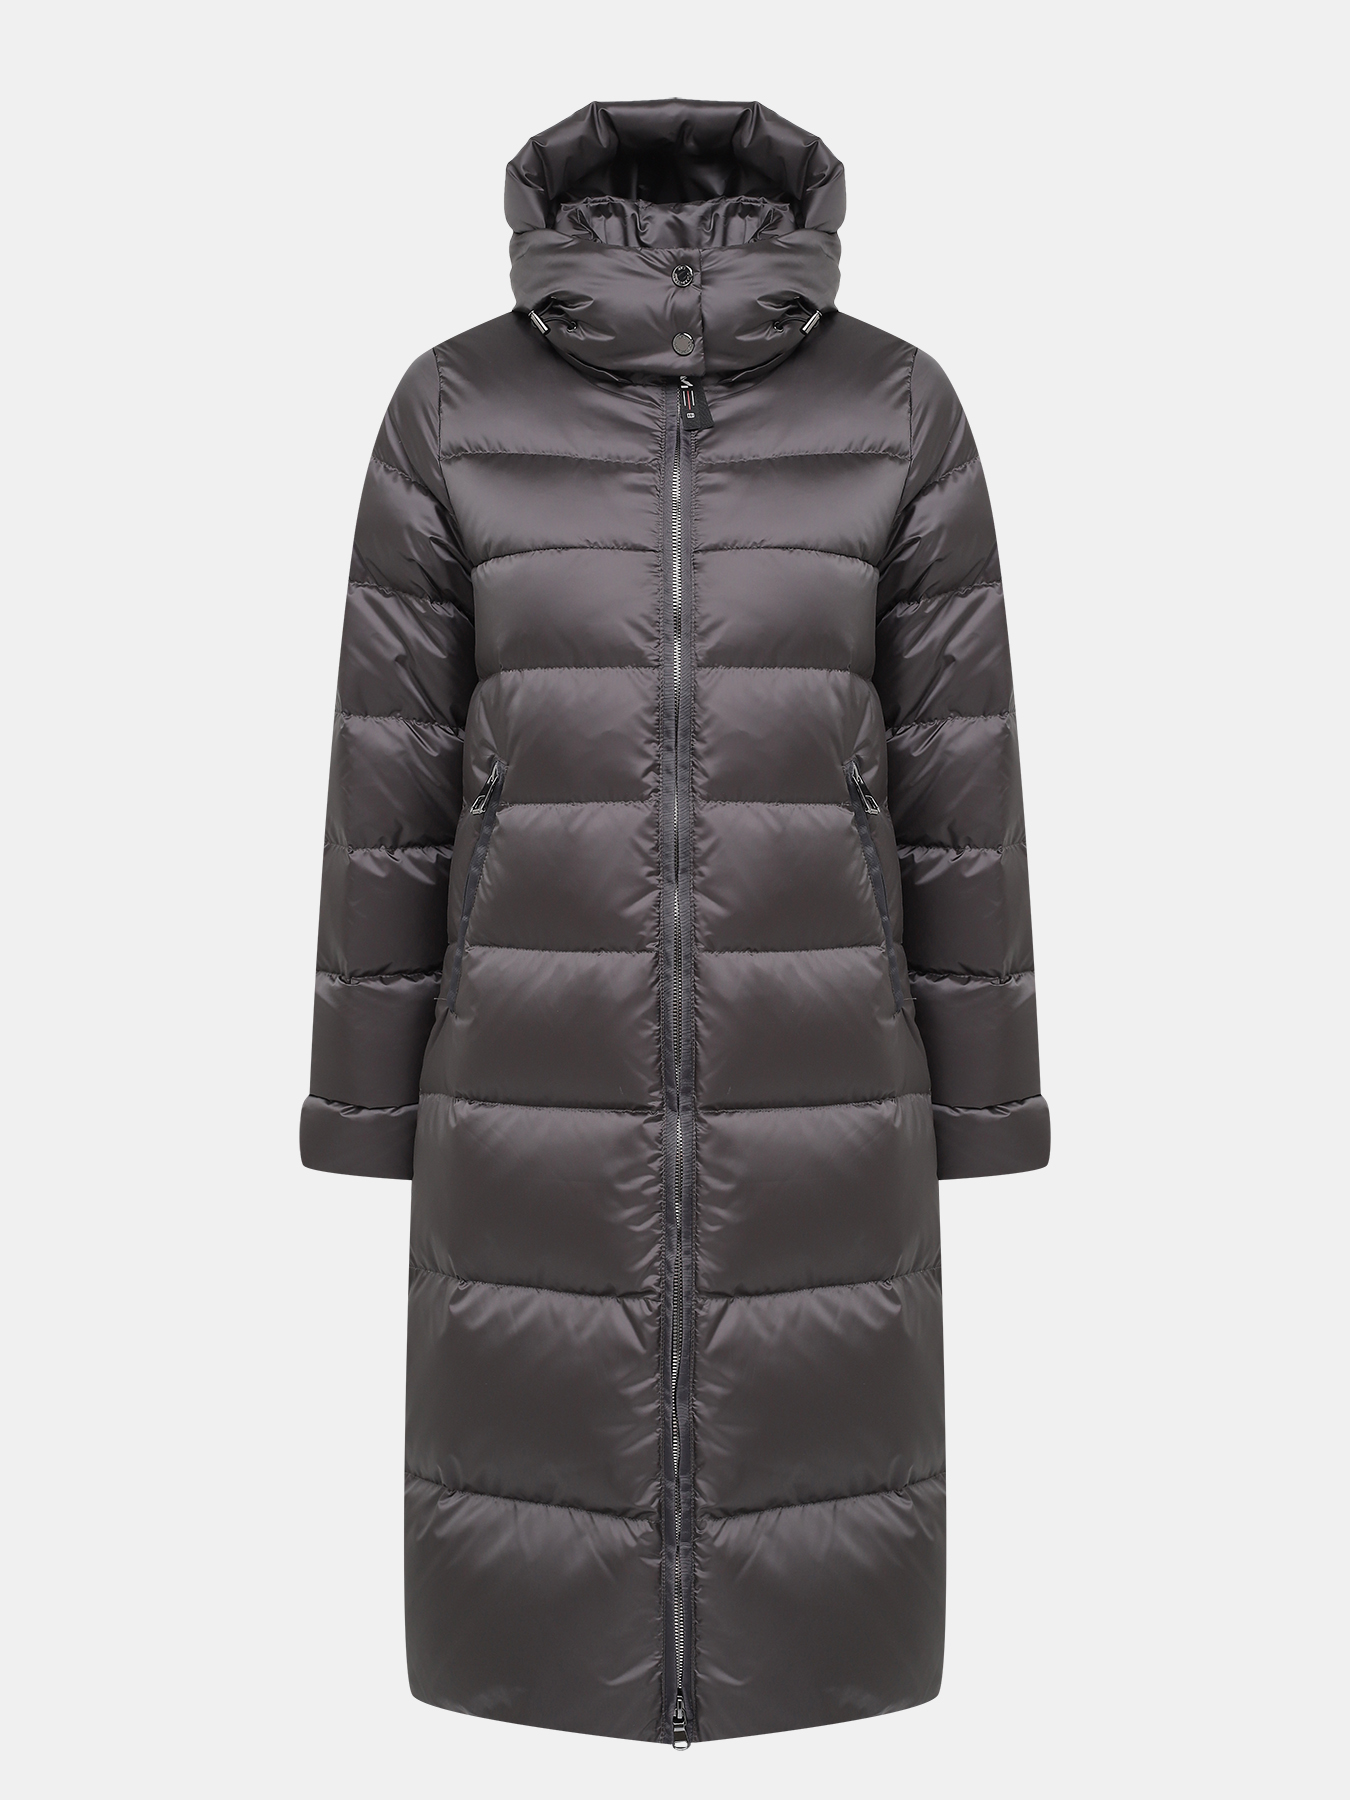 Пальто зимнее AVI 433634-021, цвет серый, размер 46